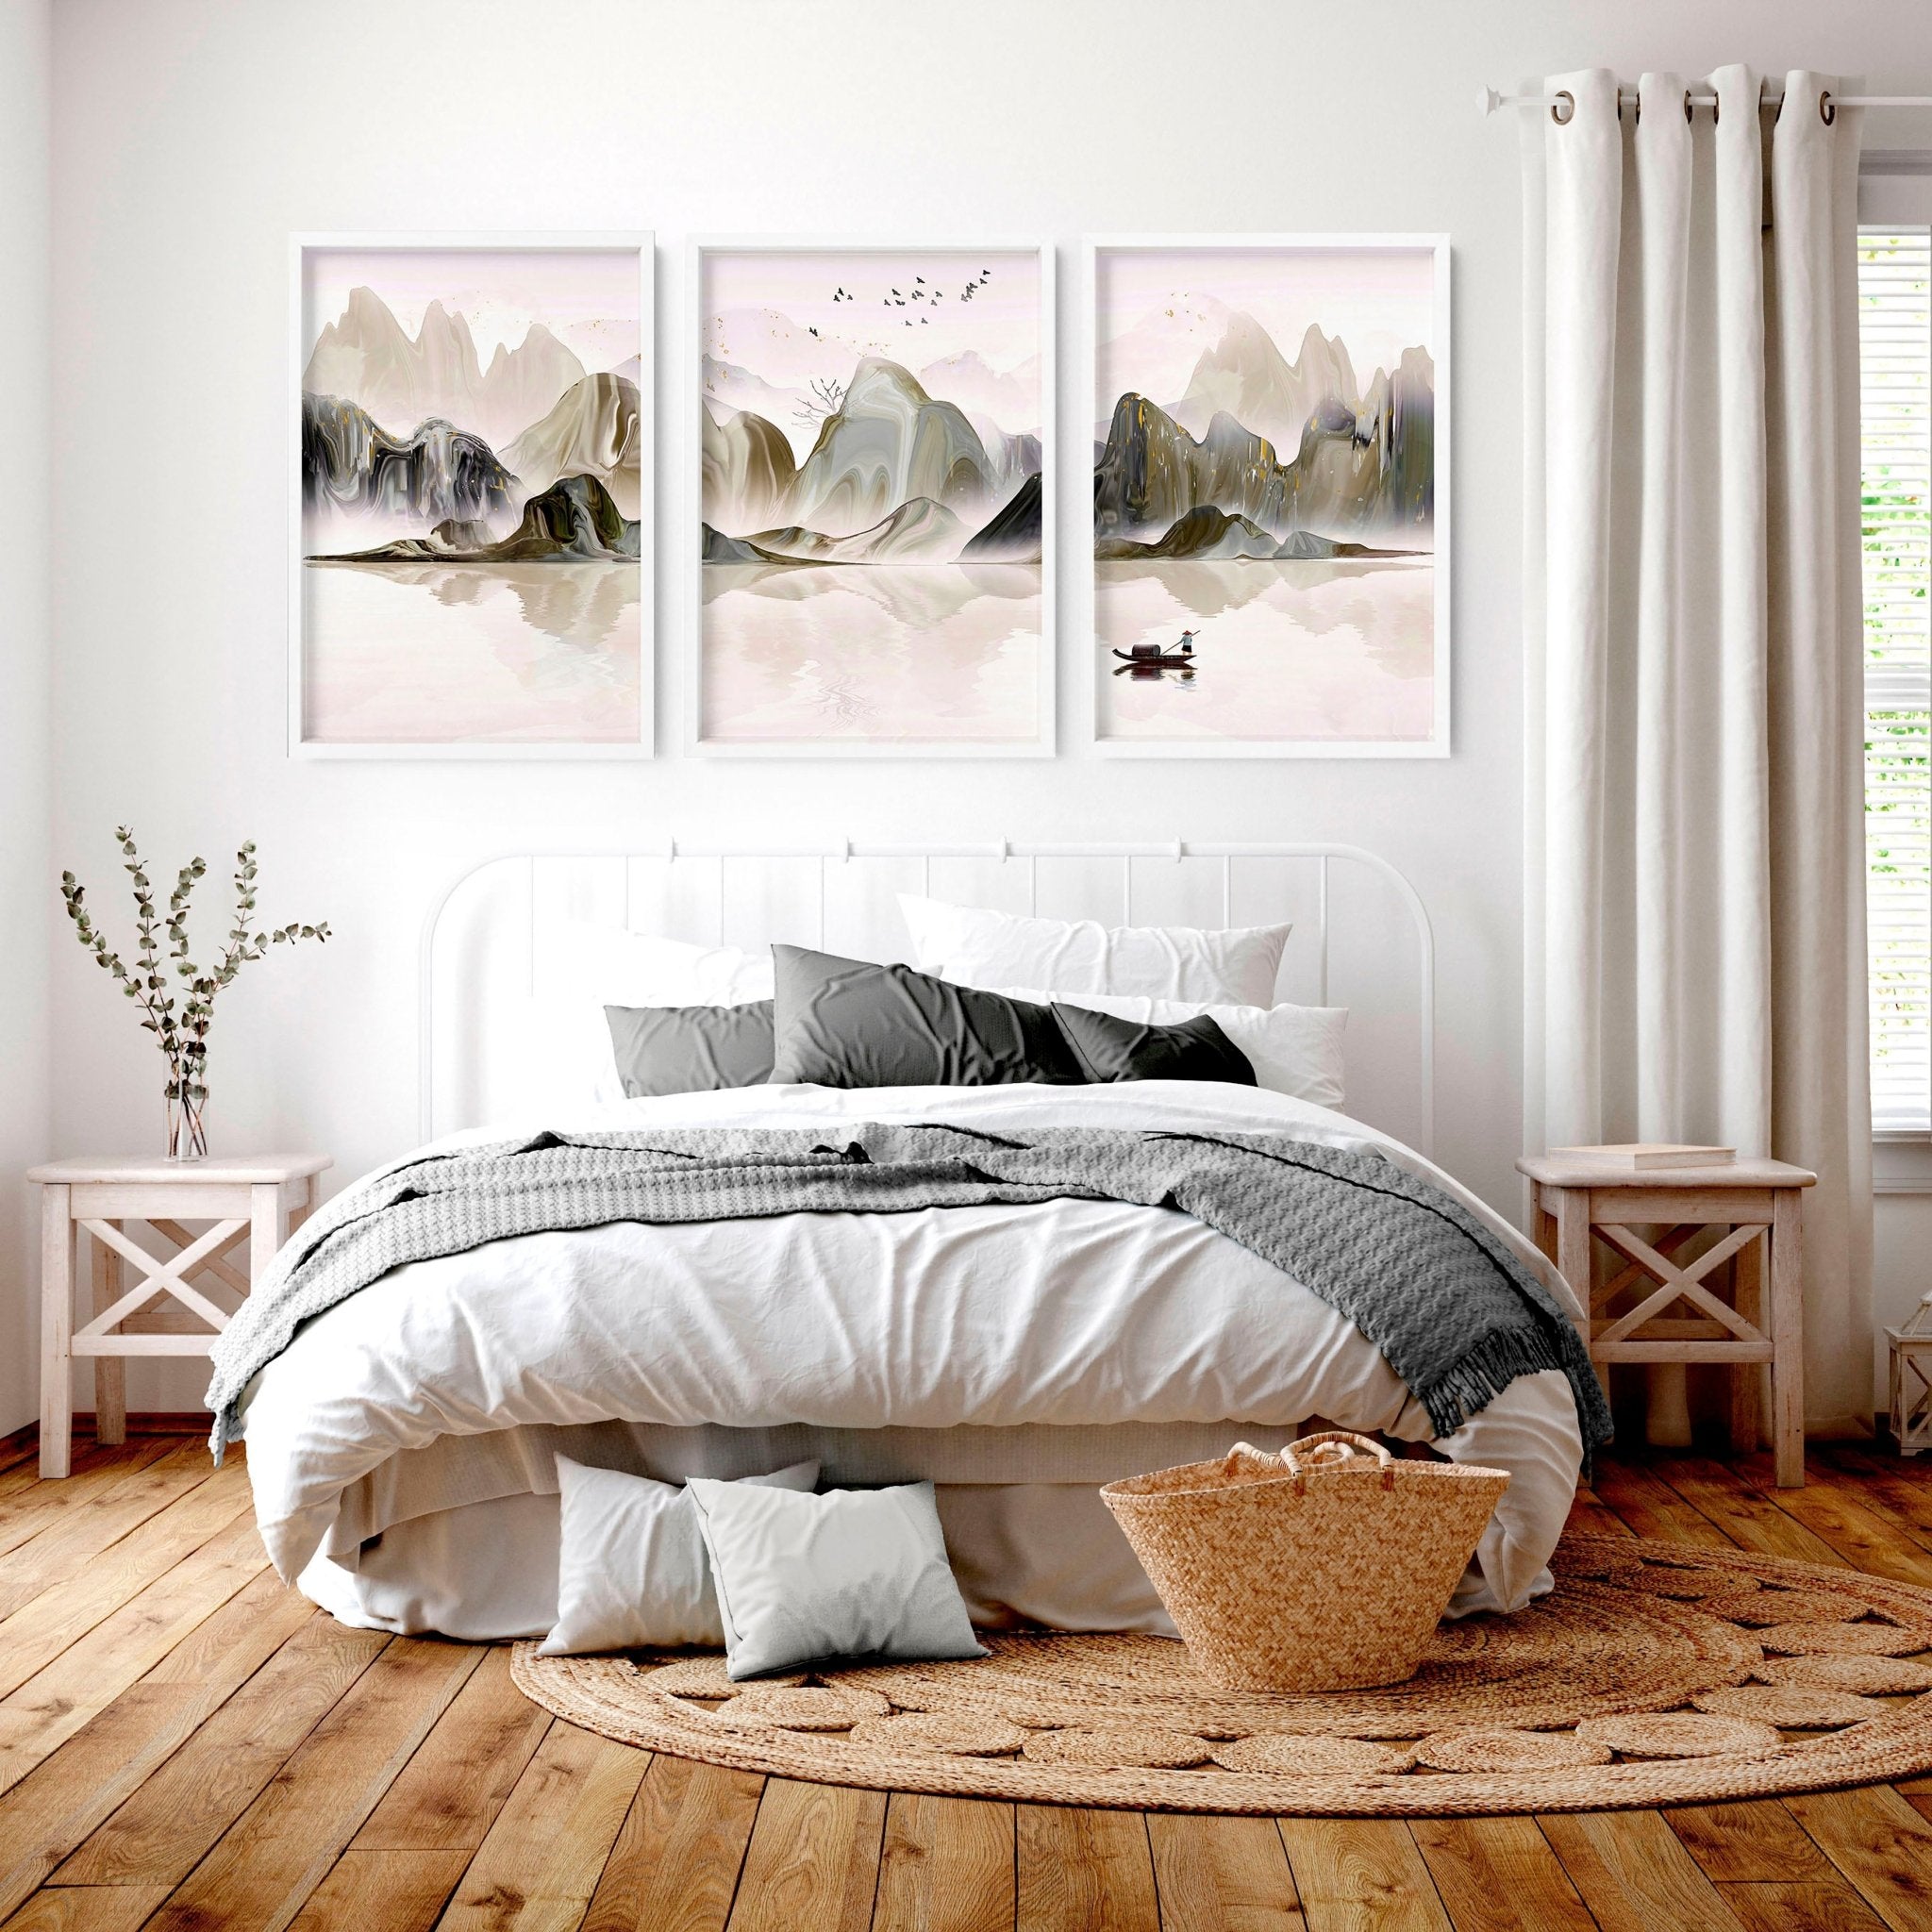 Wall decor bedroom | set of 3 wall art prints